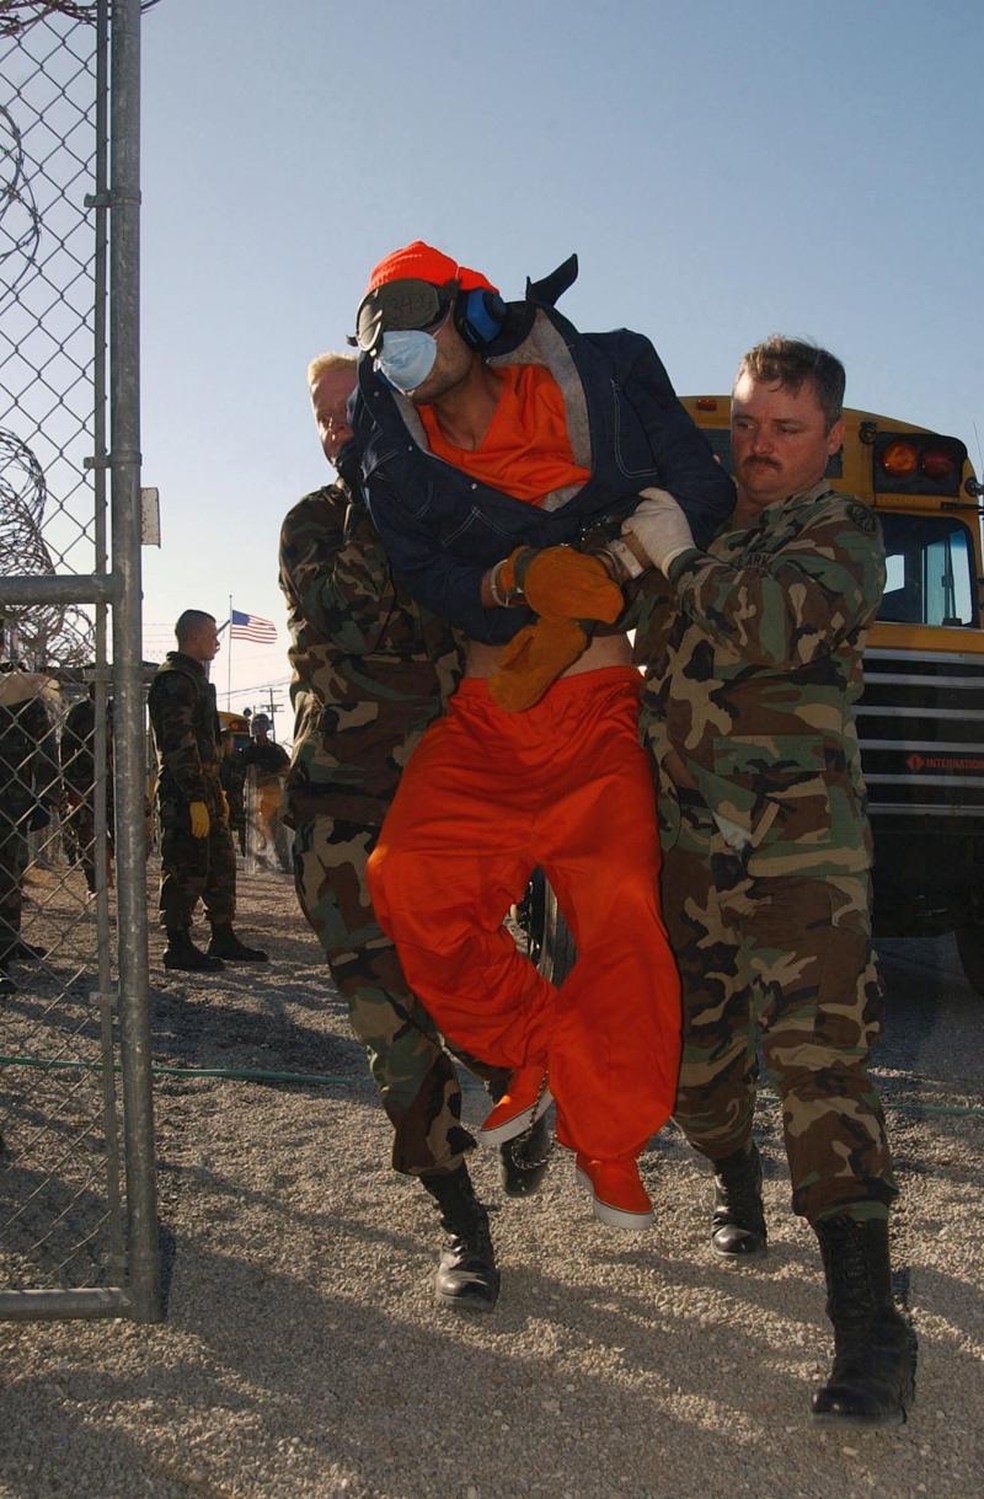 Membros do 115º Batalhão da Polícia Militar carregam um prisioneiro. Os detidos, algemados nos pés e nas mãos e privados de suas capacidades sensoriais, moviam-se com dificuldade e estavam em sua maioria muito magros. Assim, alguns soldados optavam por carregá-los. — Foto: MICHAEL W. PENDERGRASS/USN via BBC